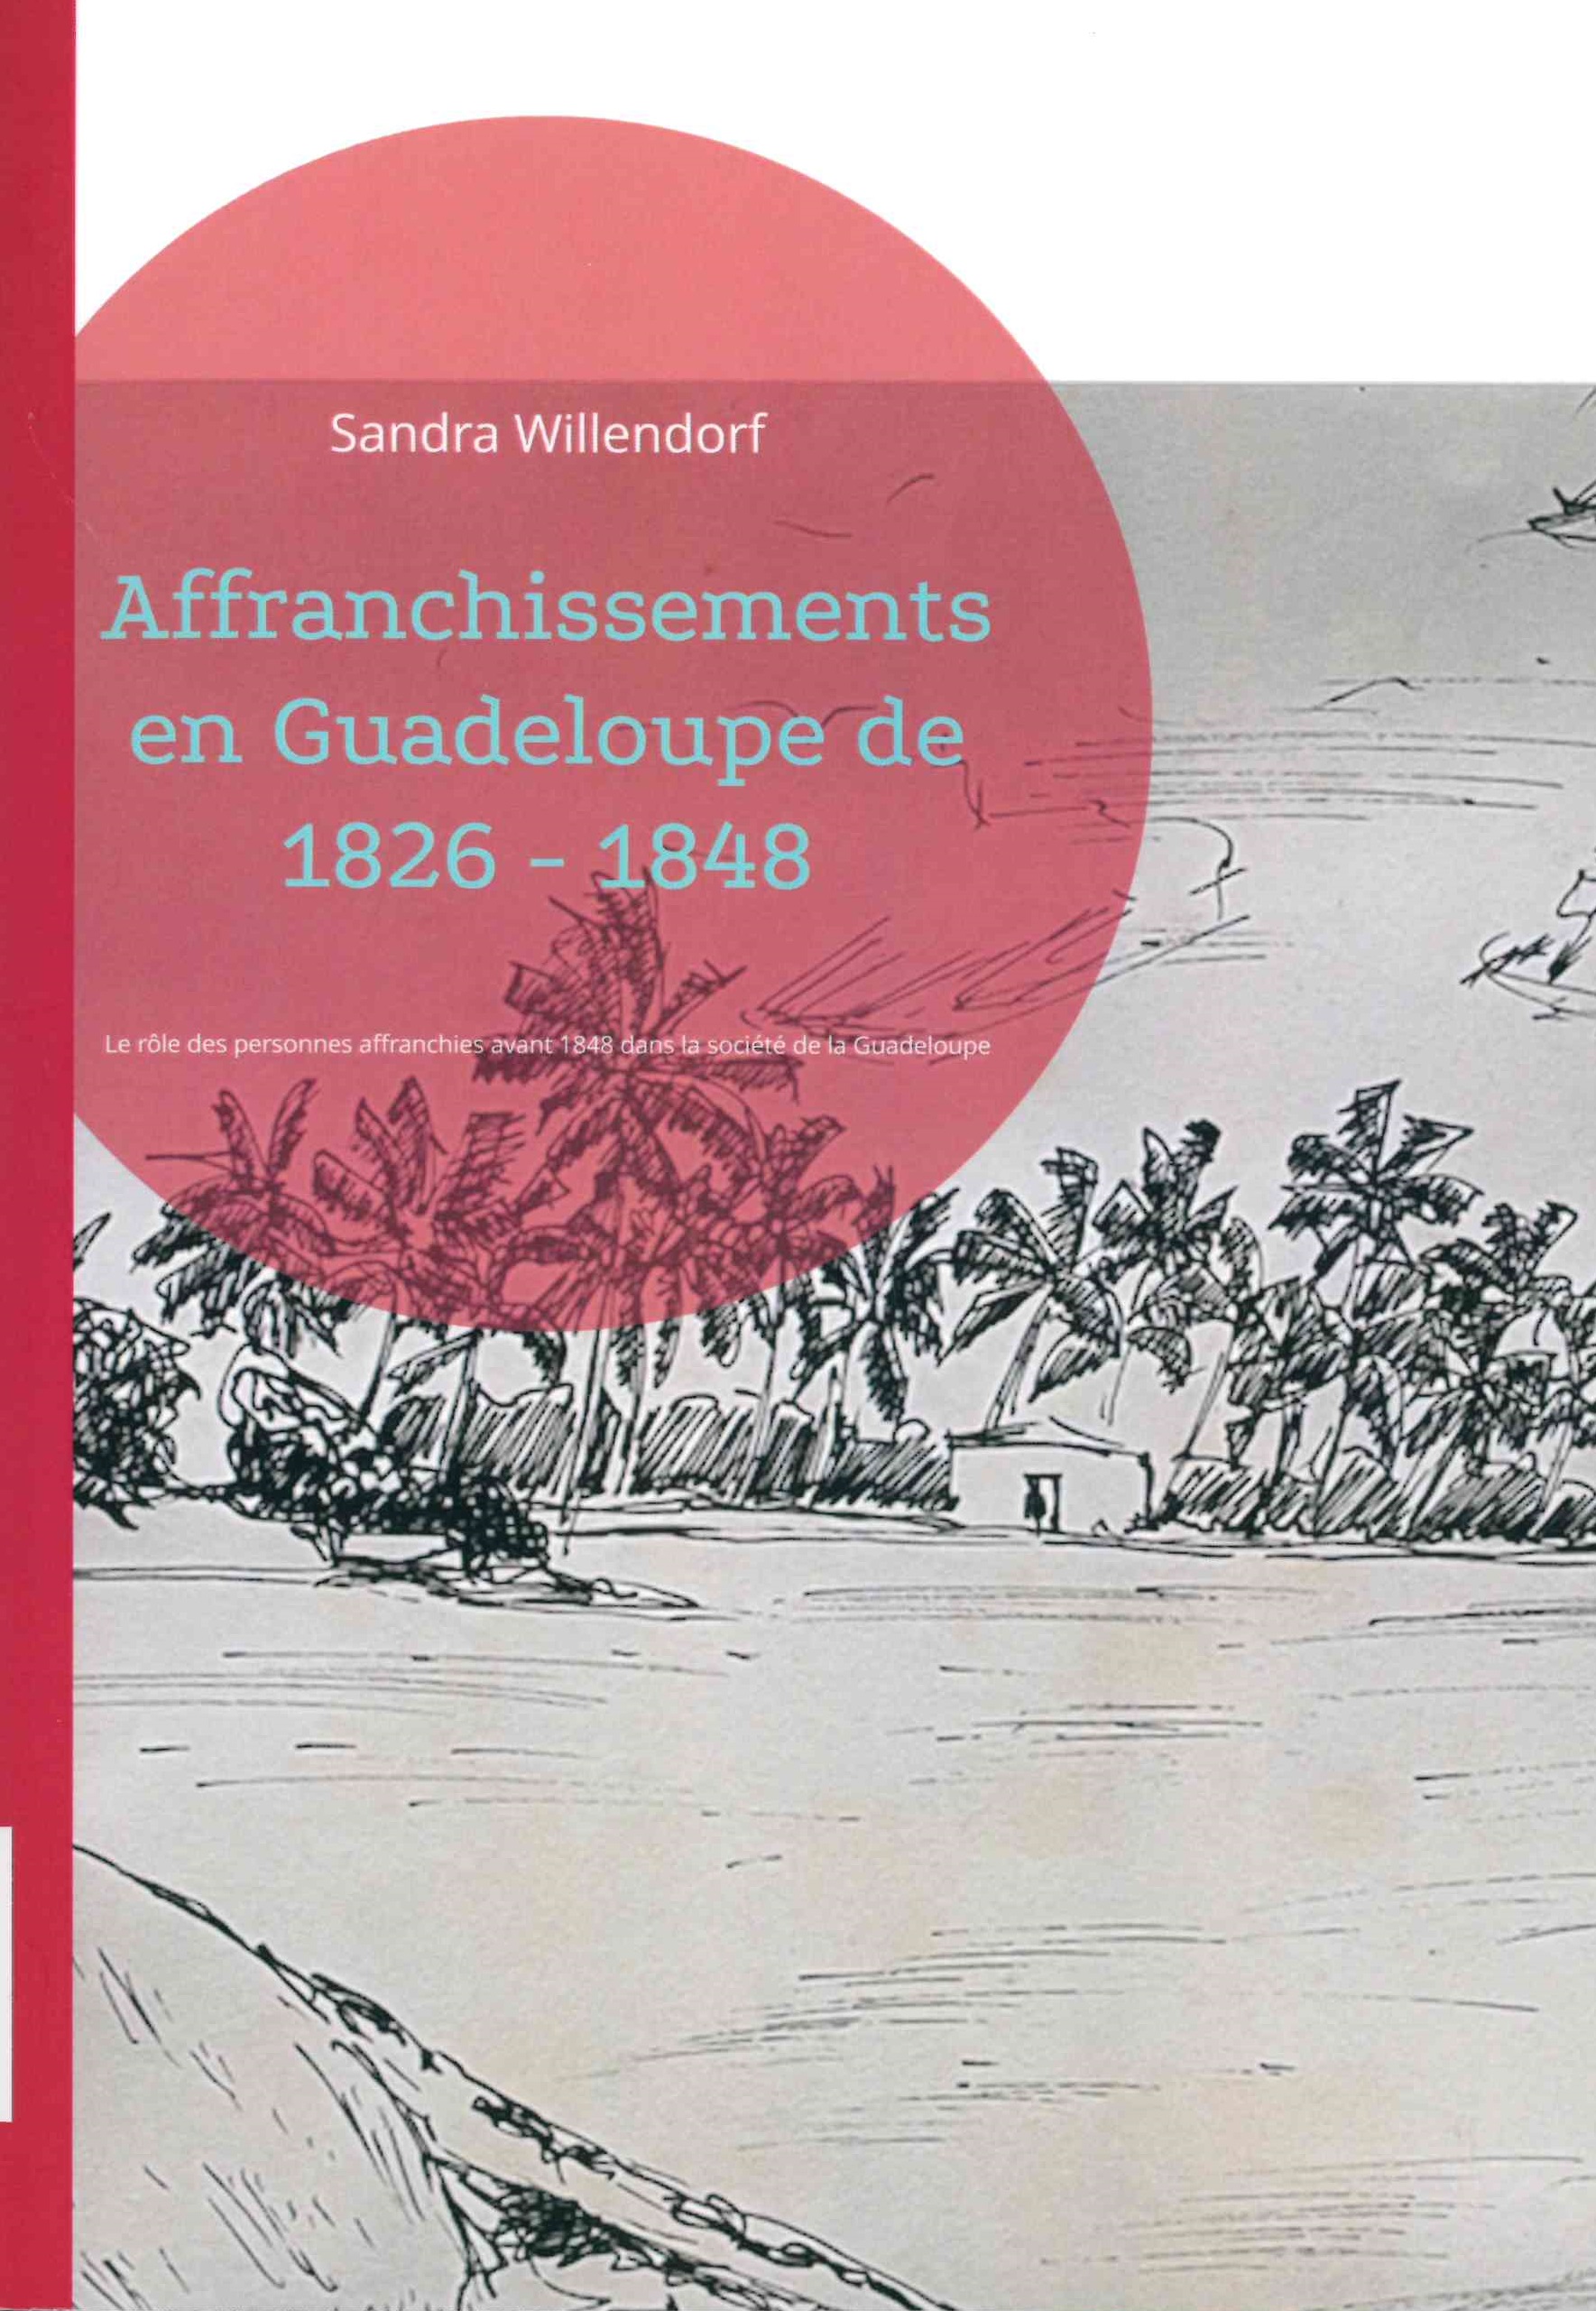 Willendorf (Sandra), Affranchissements en Guadeloupe de 1826-1848 : le rôle des personnes affranchies avant 1848 dans la société de Guadeloupe